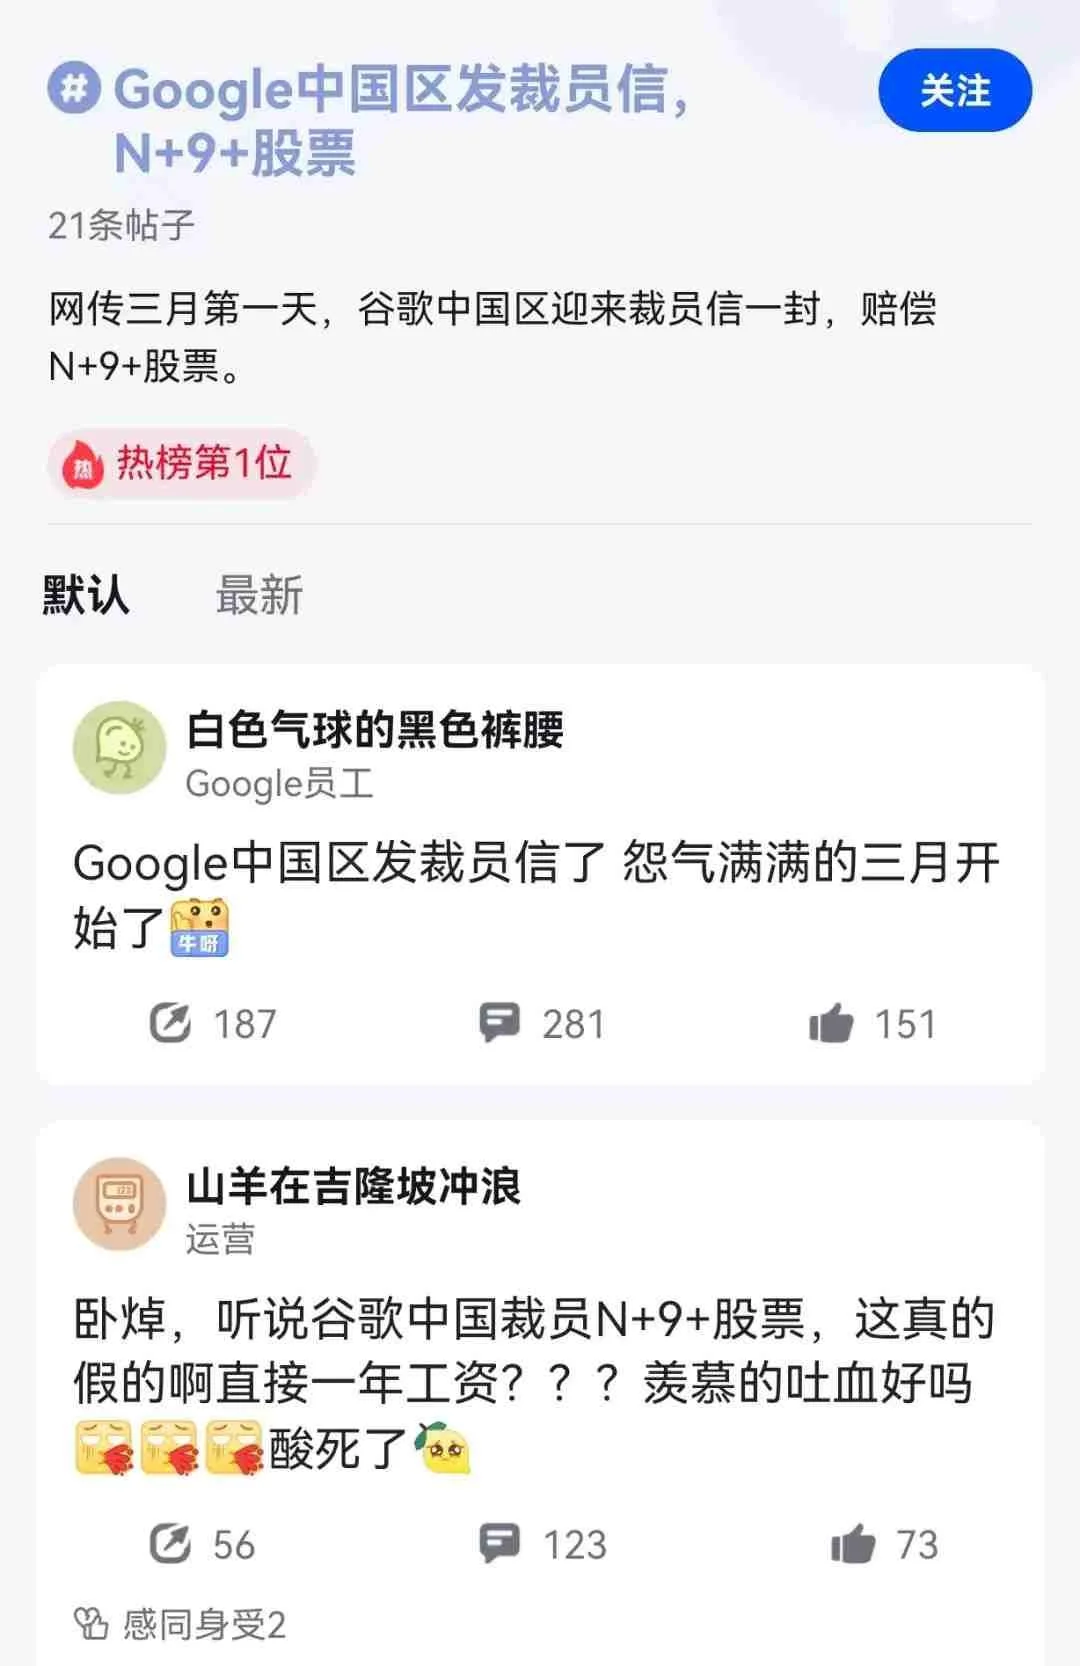 传谷歌中国裁员 发放赔偿大礼包：N+9+股票 - EVLIT